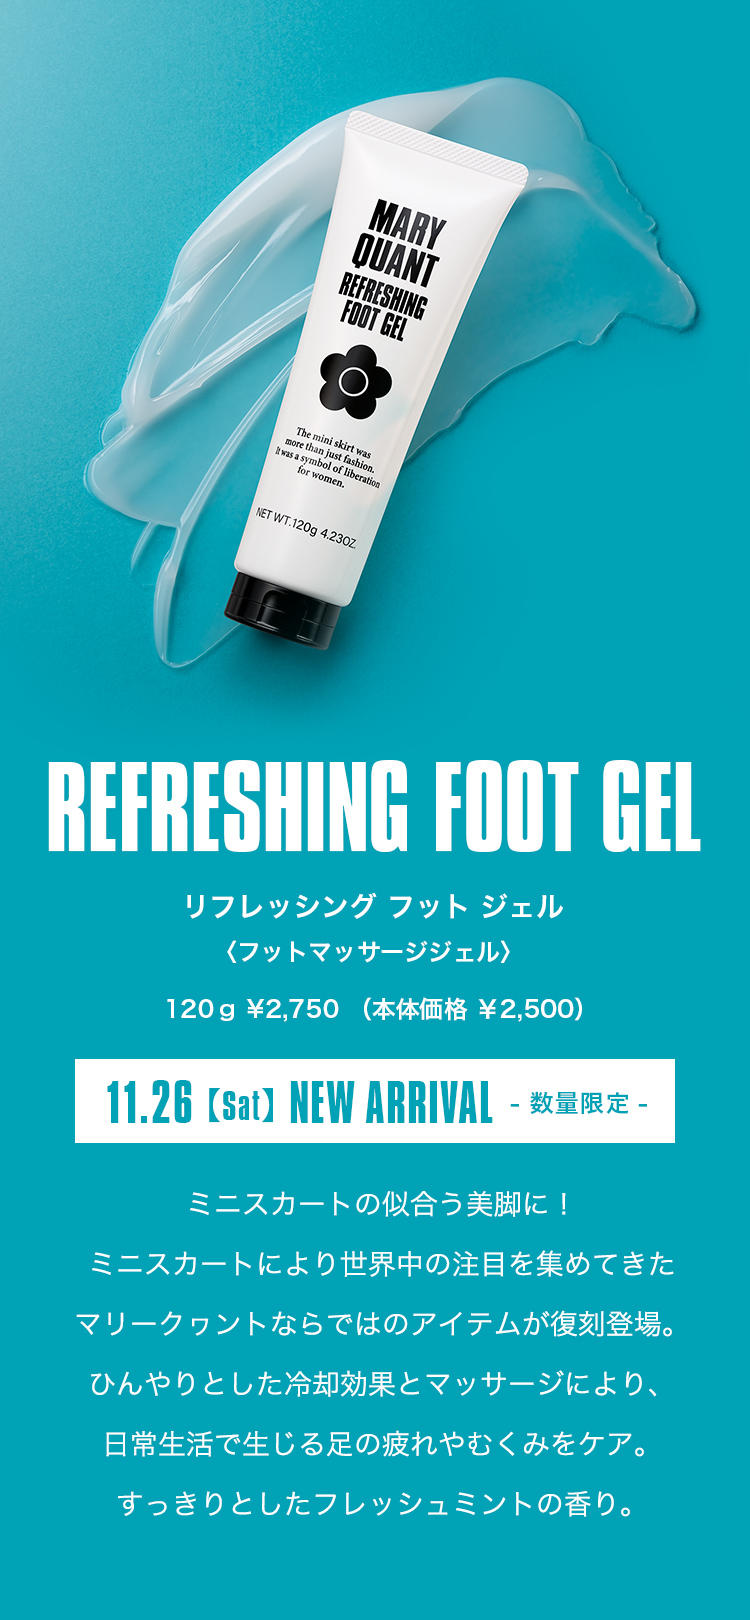 【REFRESHING FOOT GEL】リフレッシング フット ジェル〈フットマッサージジェル〉.120ｇ ¥2,750 （本体価格 ￥2,500）.11.26【sat】NEW ARRIVAL- 数量限定 -